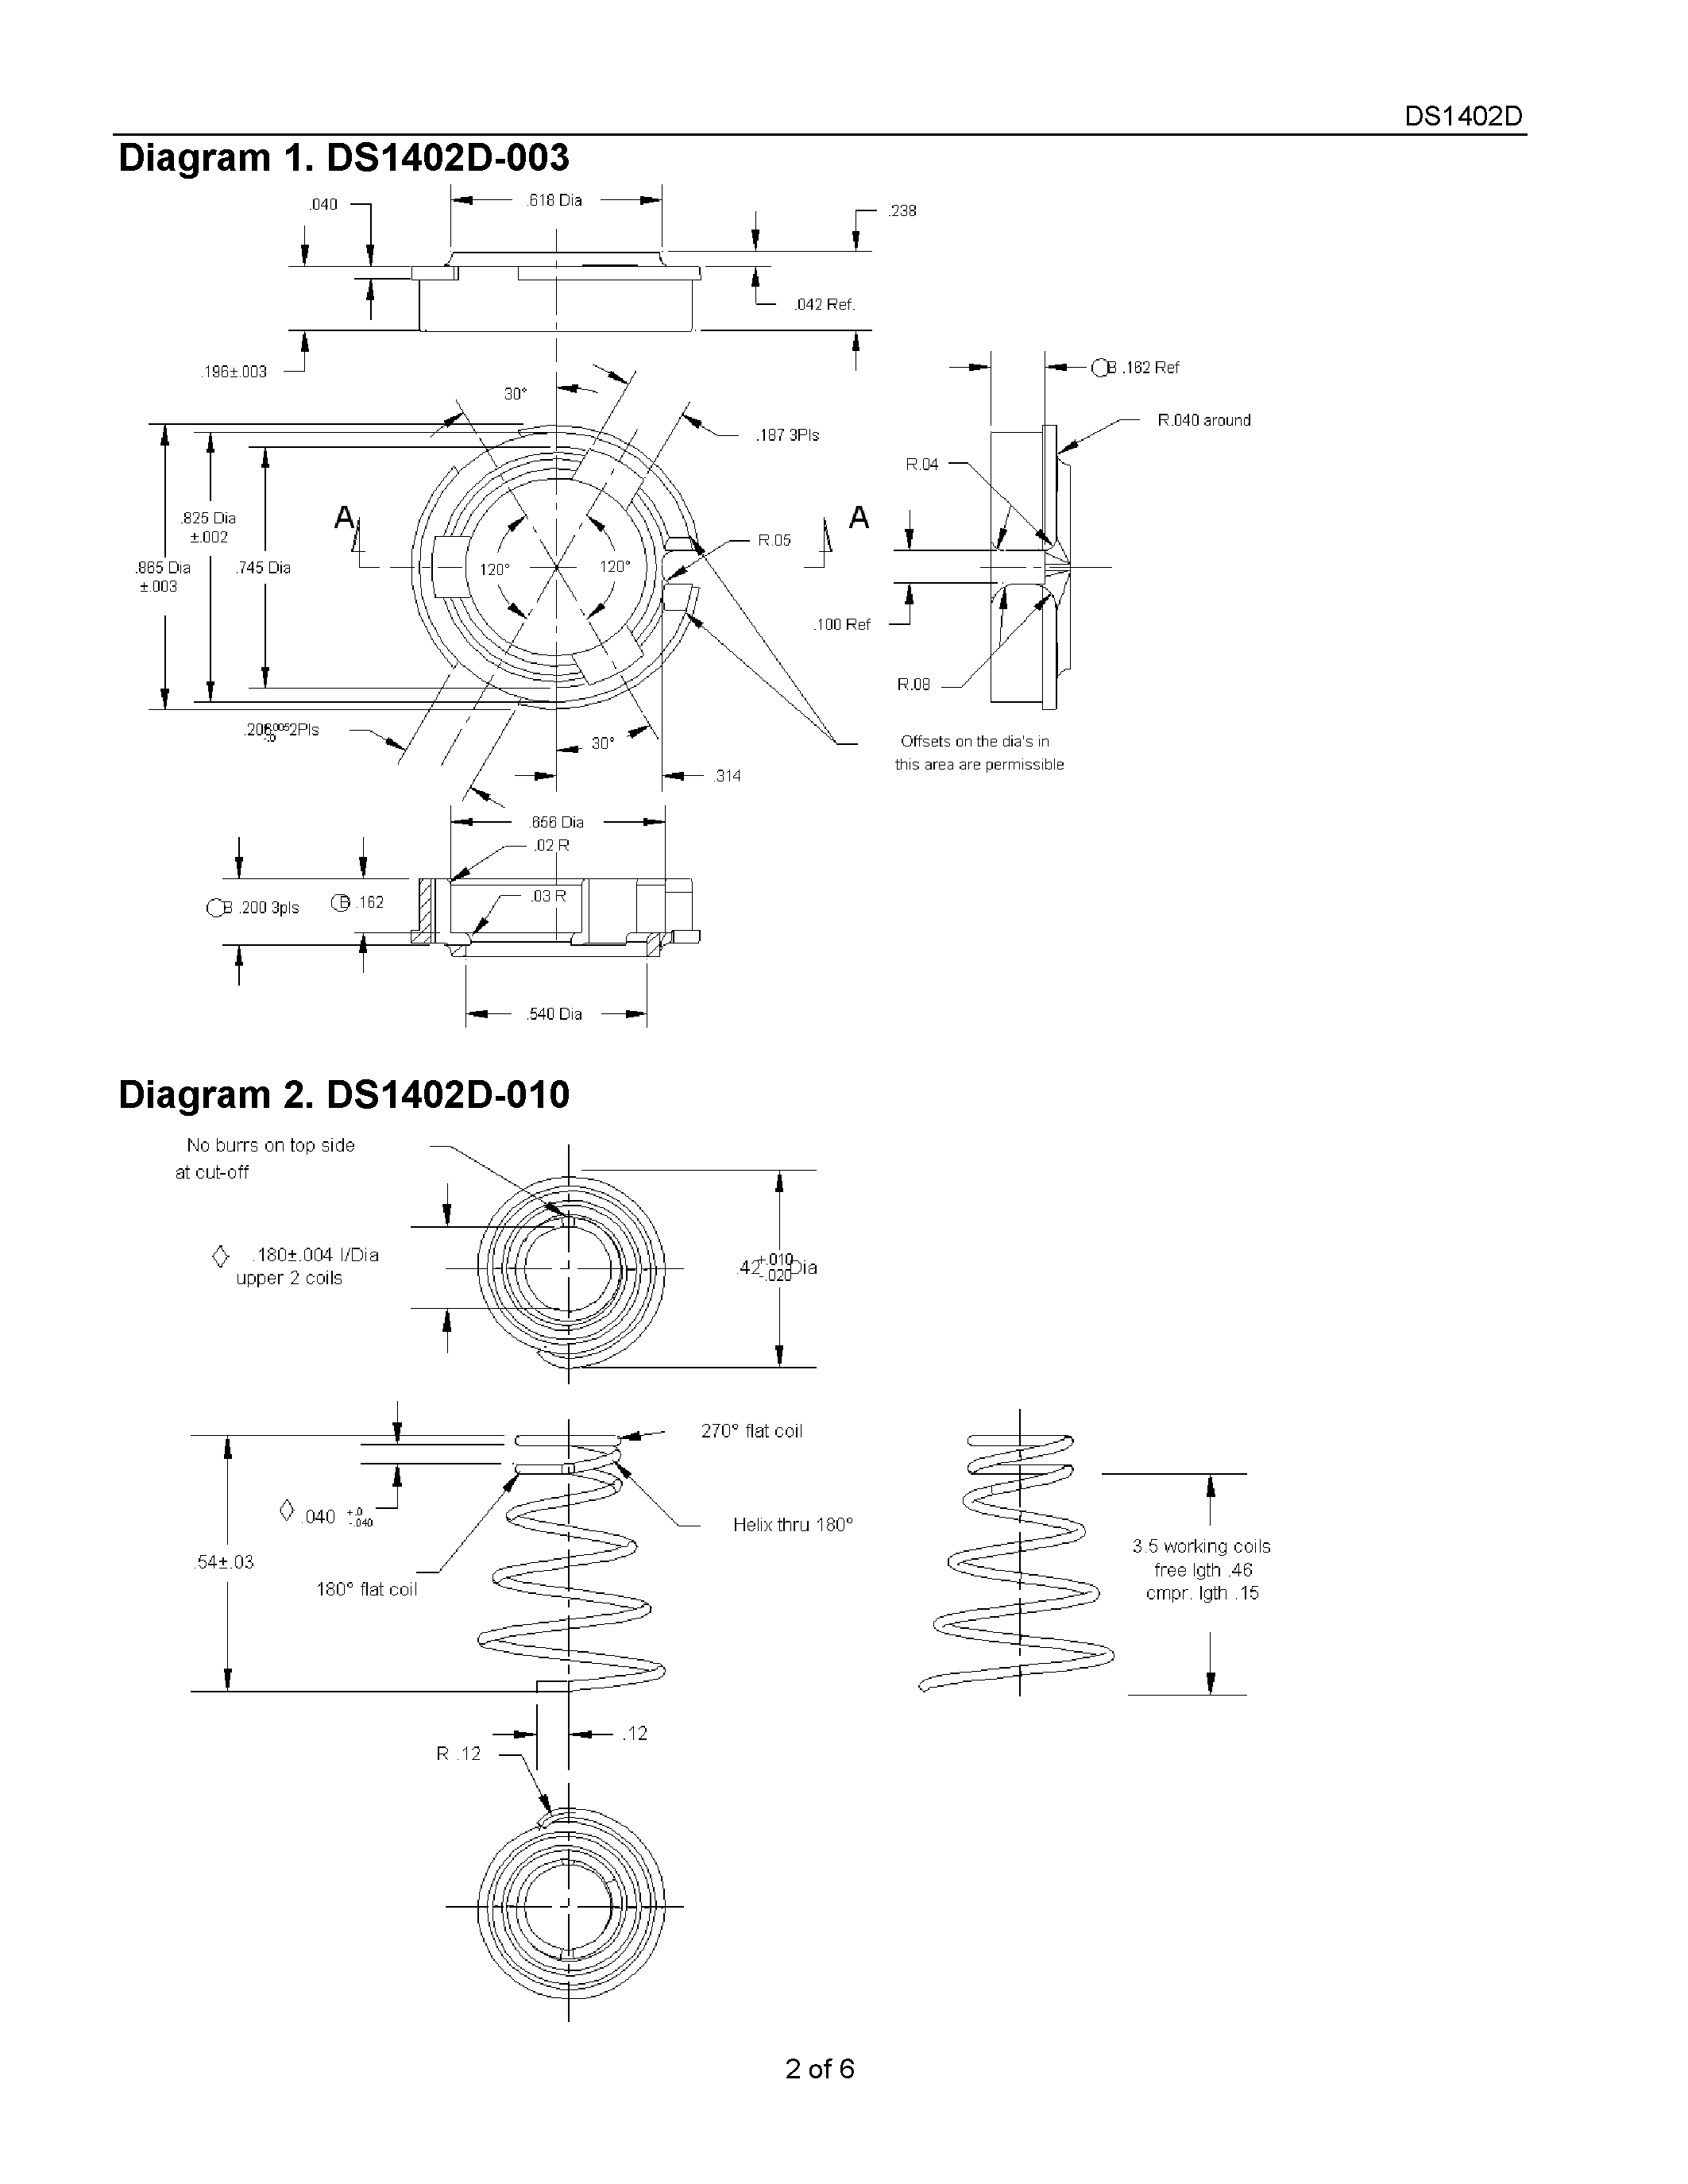 Даташит DS1402D-010 - iButton Probe Component Parts страница 2